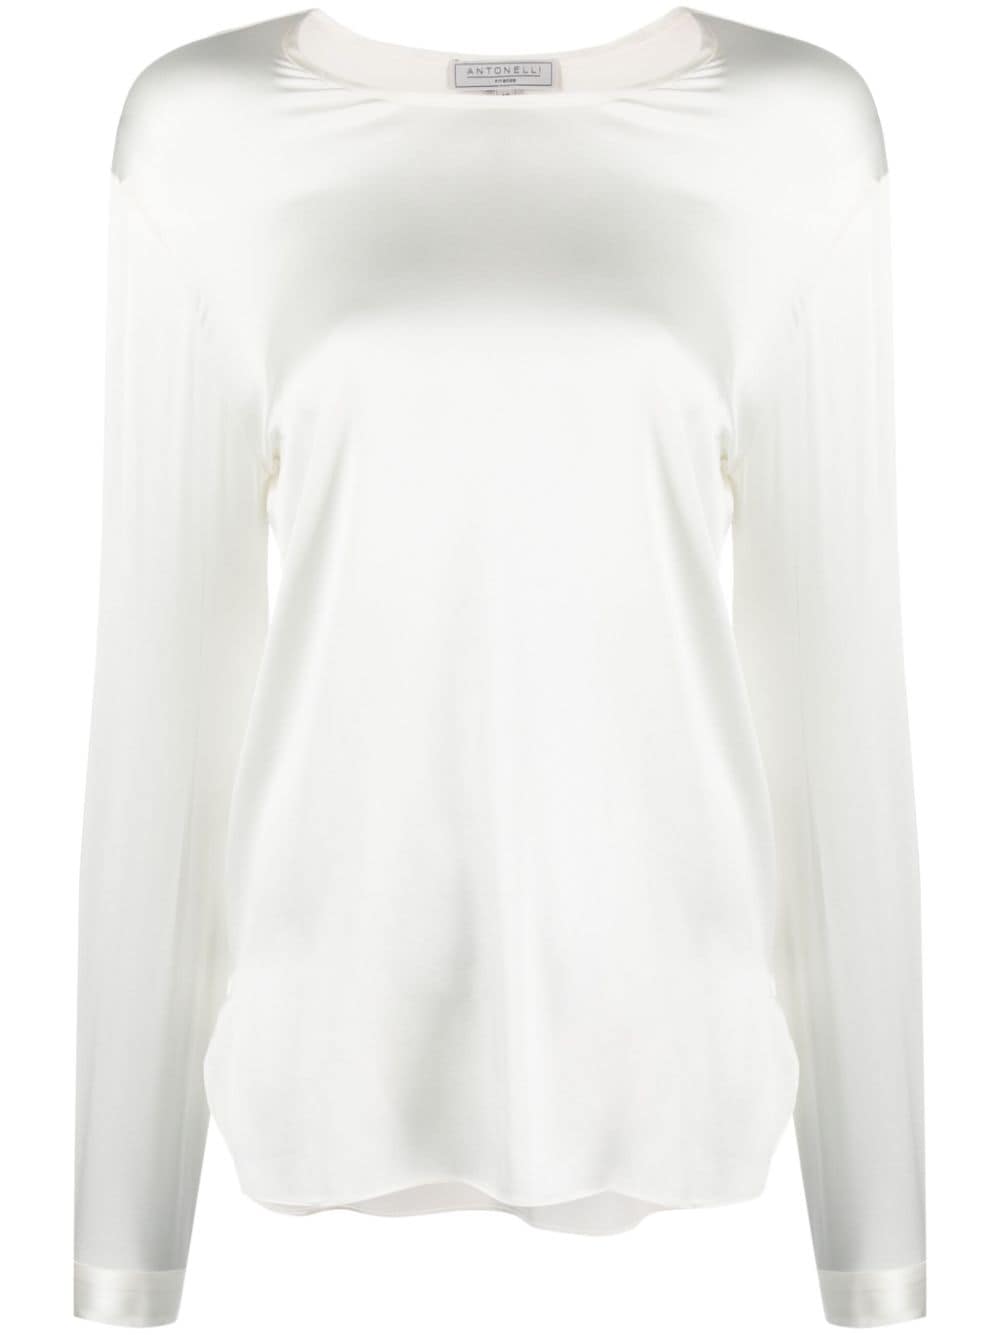 Antonelli boat-neck satin sweatshirt - White von Antonelli